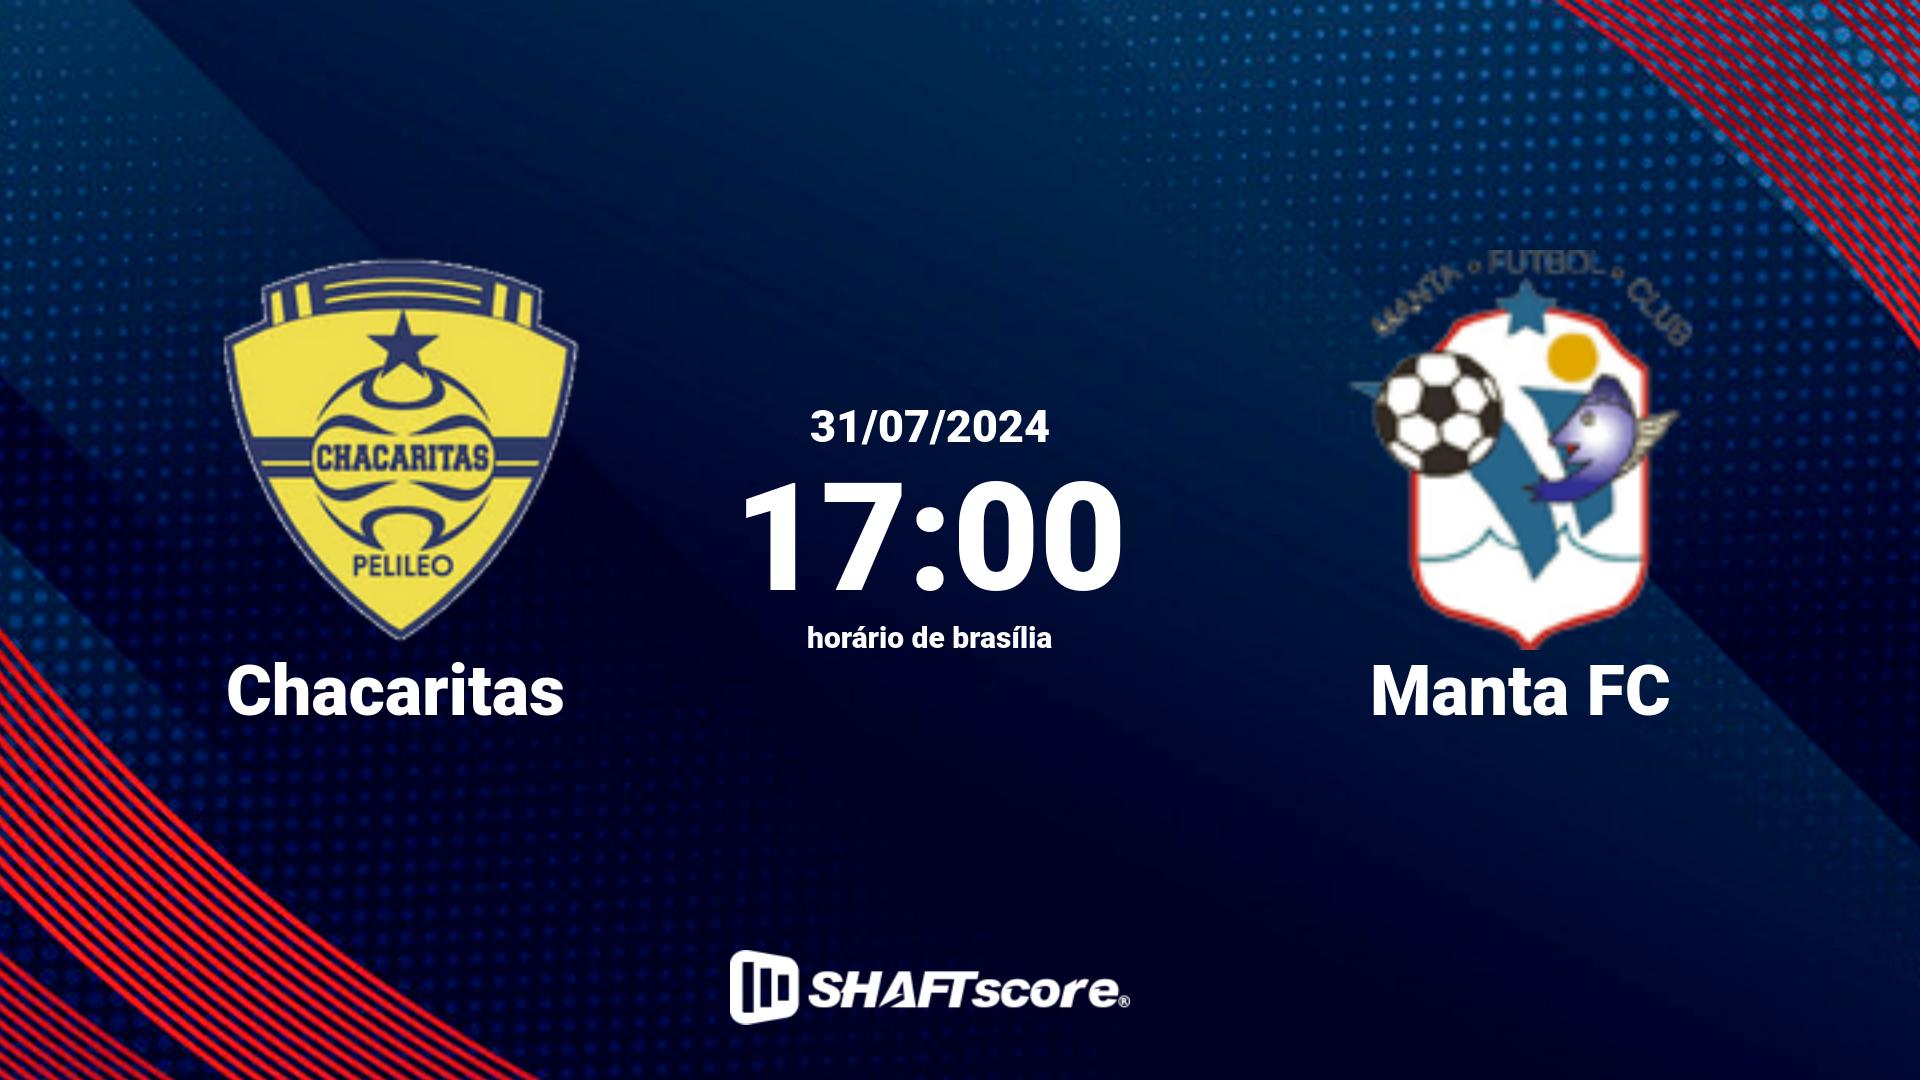 Estatísticas do jogo Chacaritas vs Manta FC 31.07 17:00